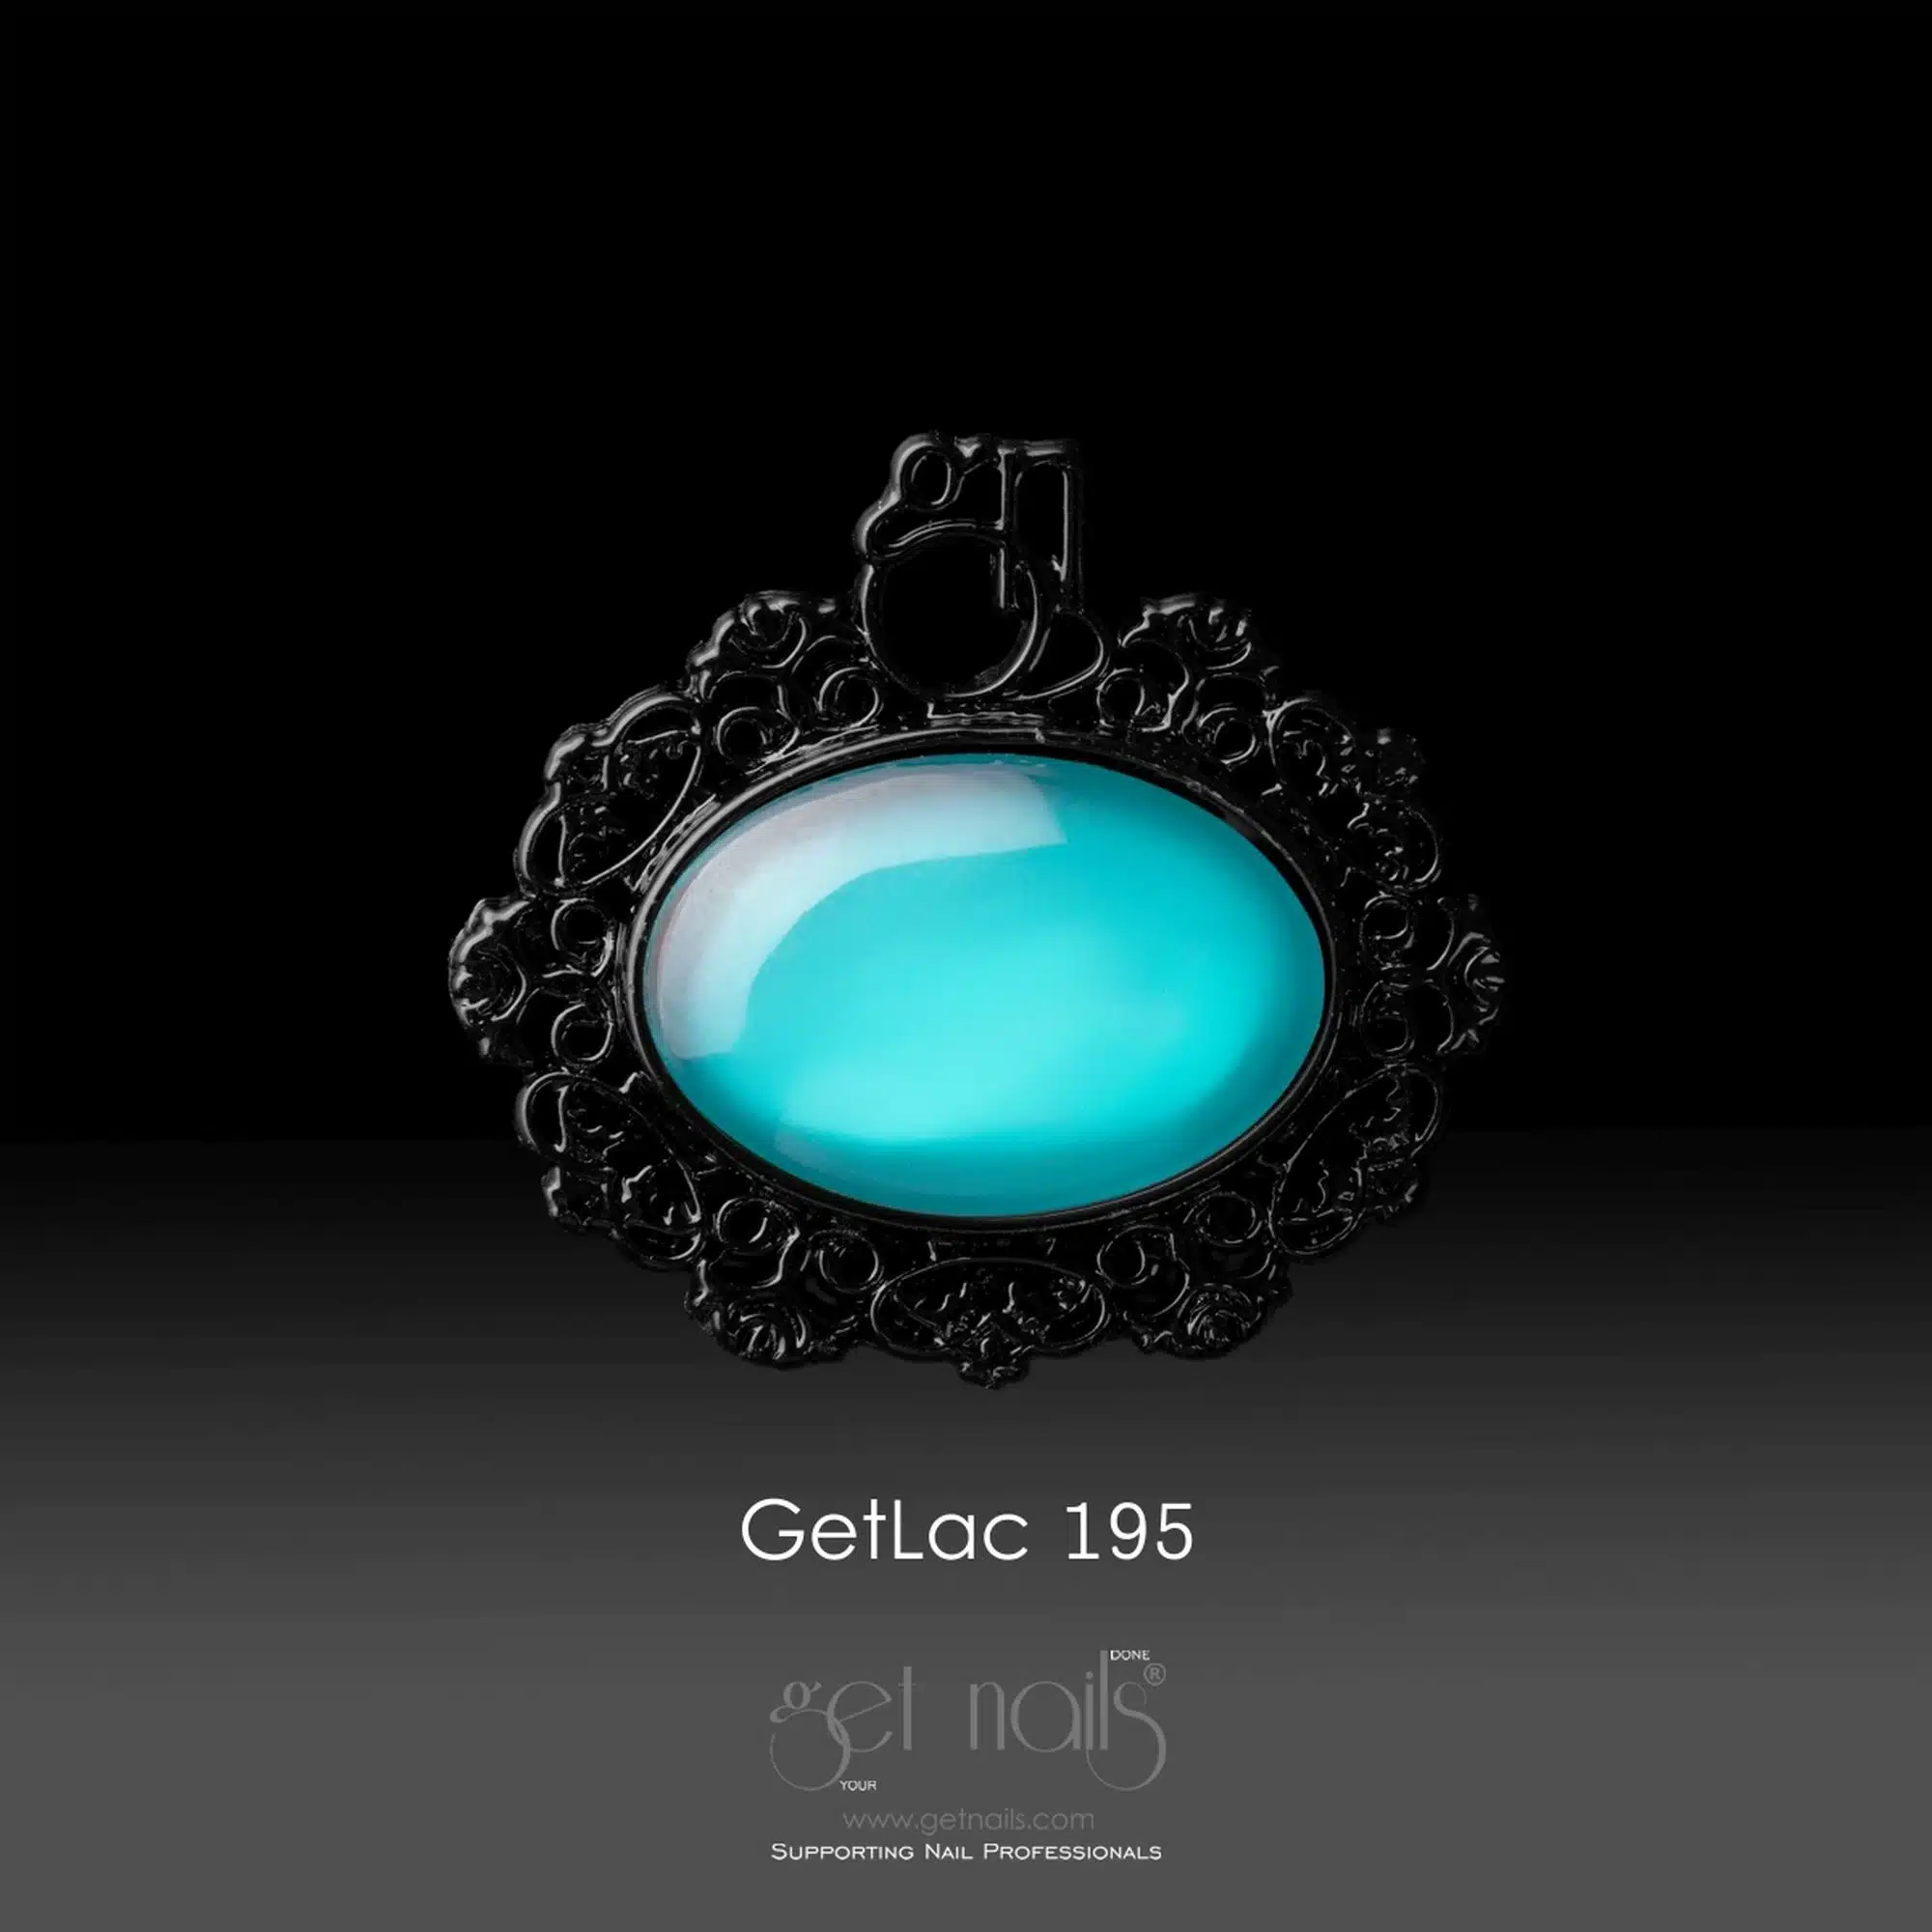 Get Nails Austria - GetLac 195 Blue Curaçao 15g